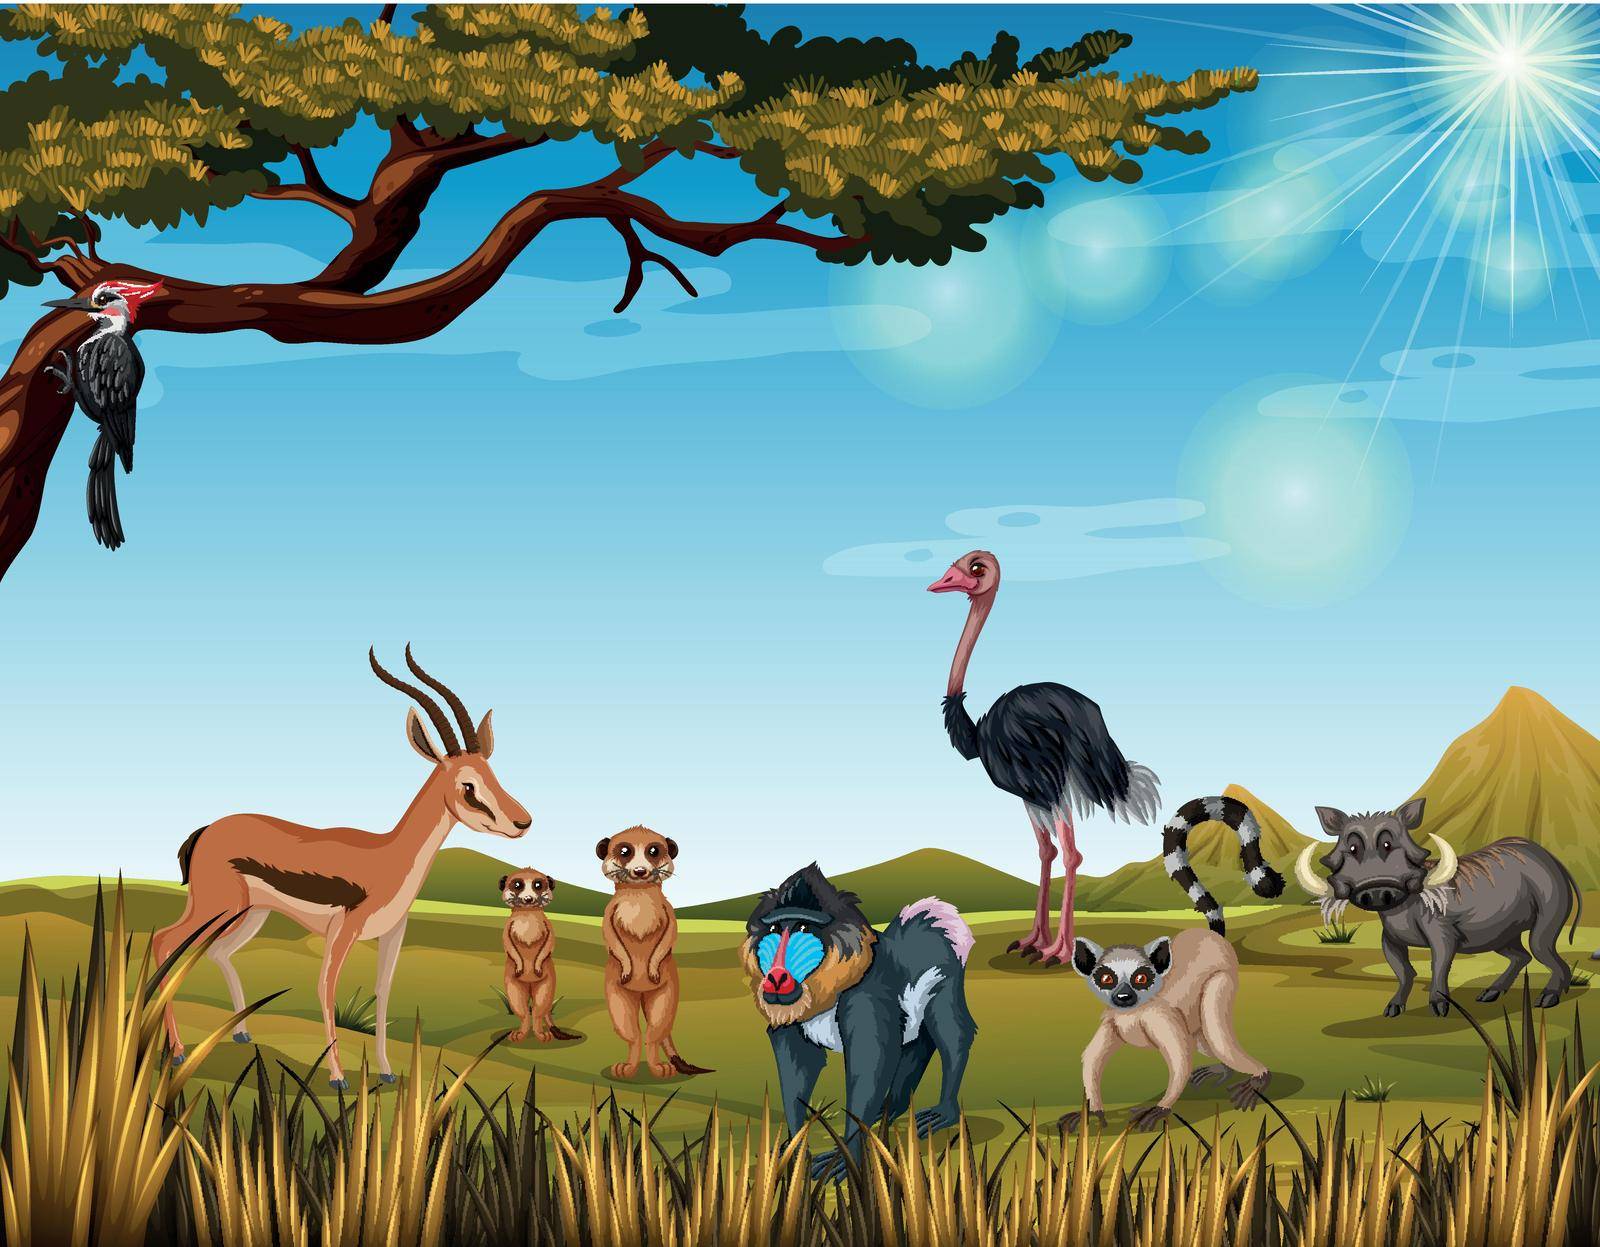 Animals in the open safari illustration